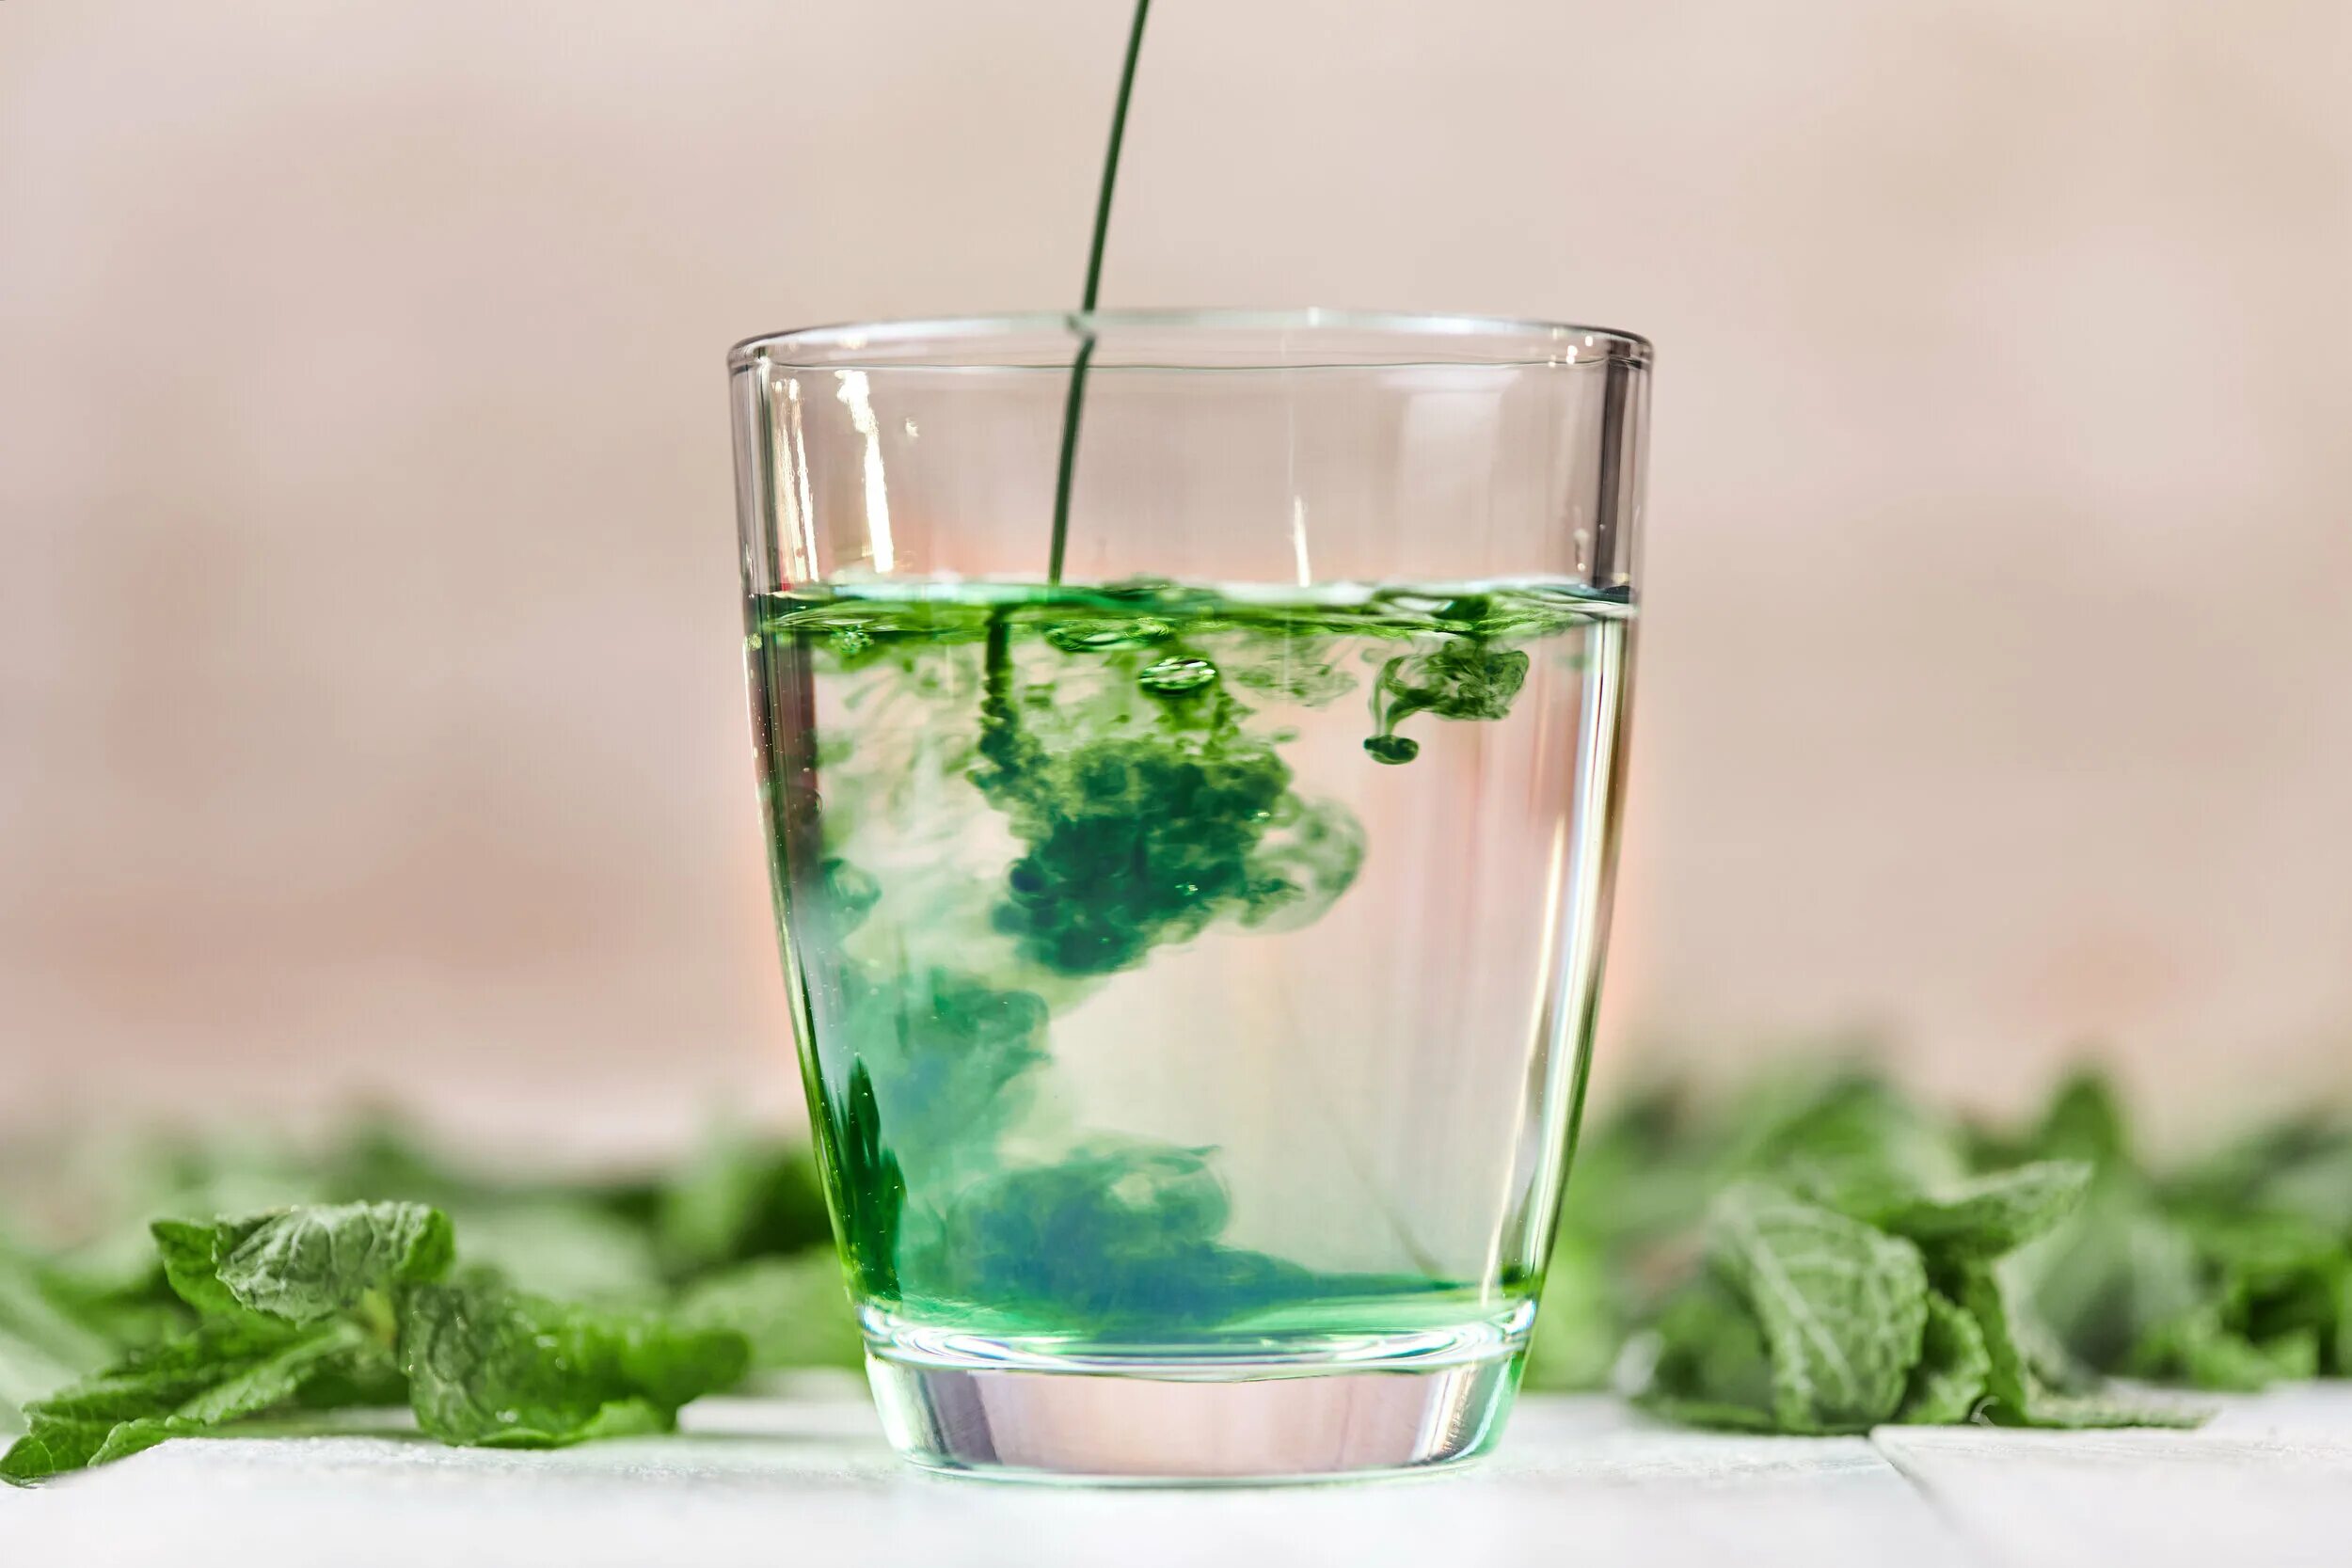 Хлорофилл. Хлорофилл жидкий в стакане. Зелень в стакане с водой. Зеленая жижа в стакане. Стакан с зеленой водой